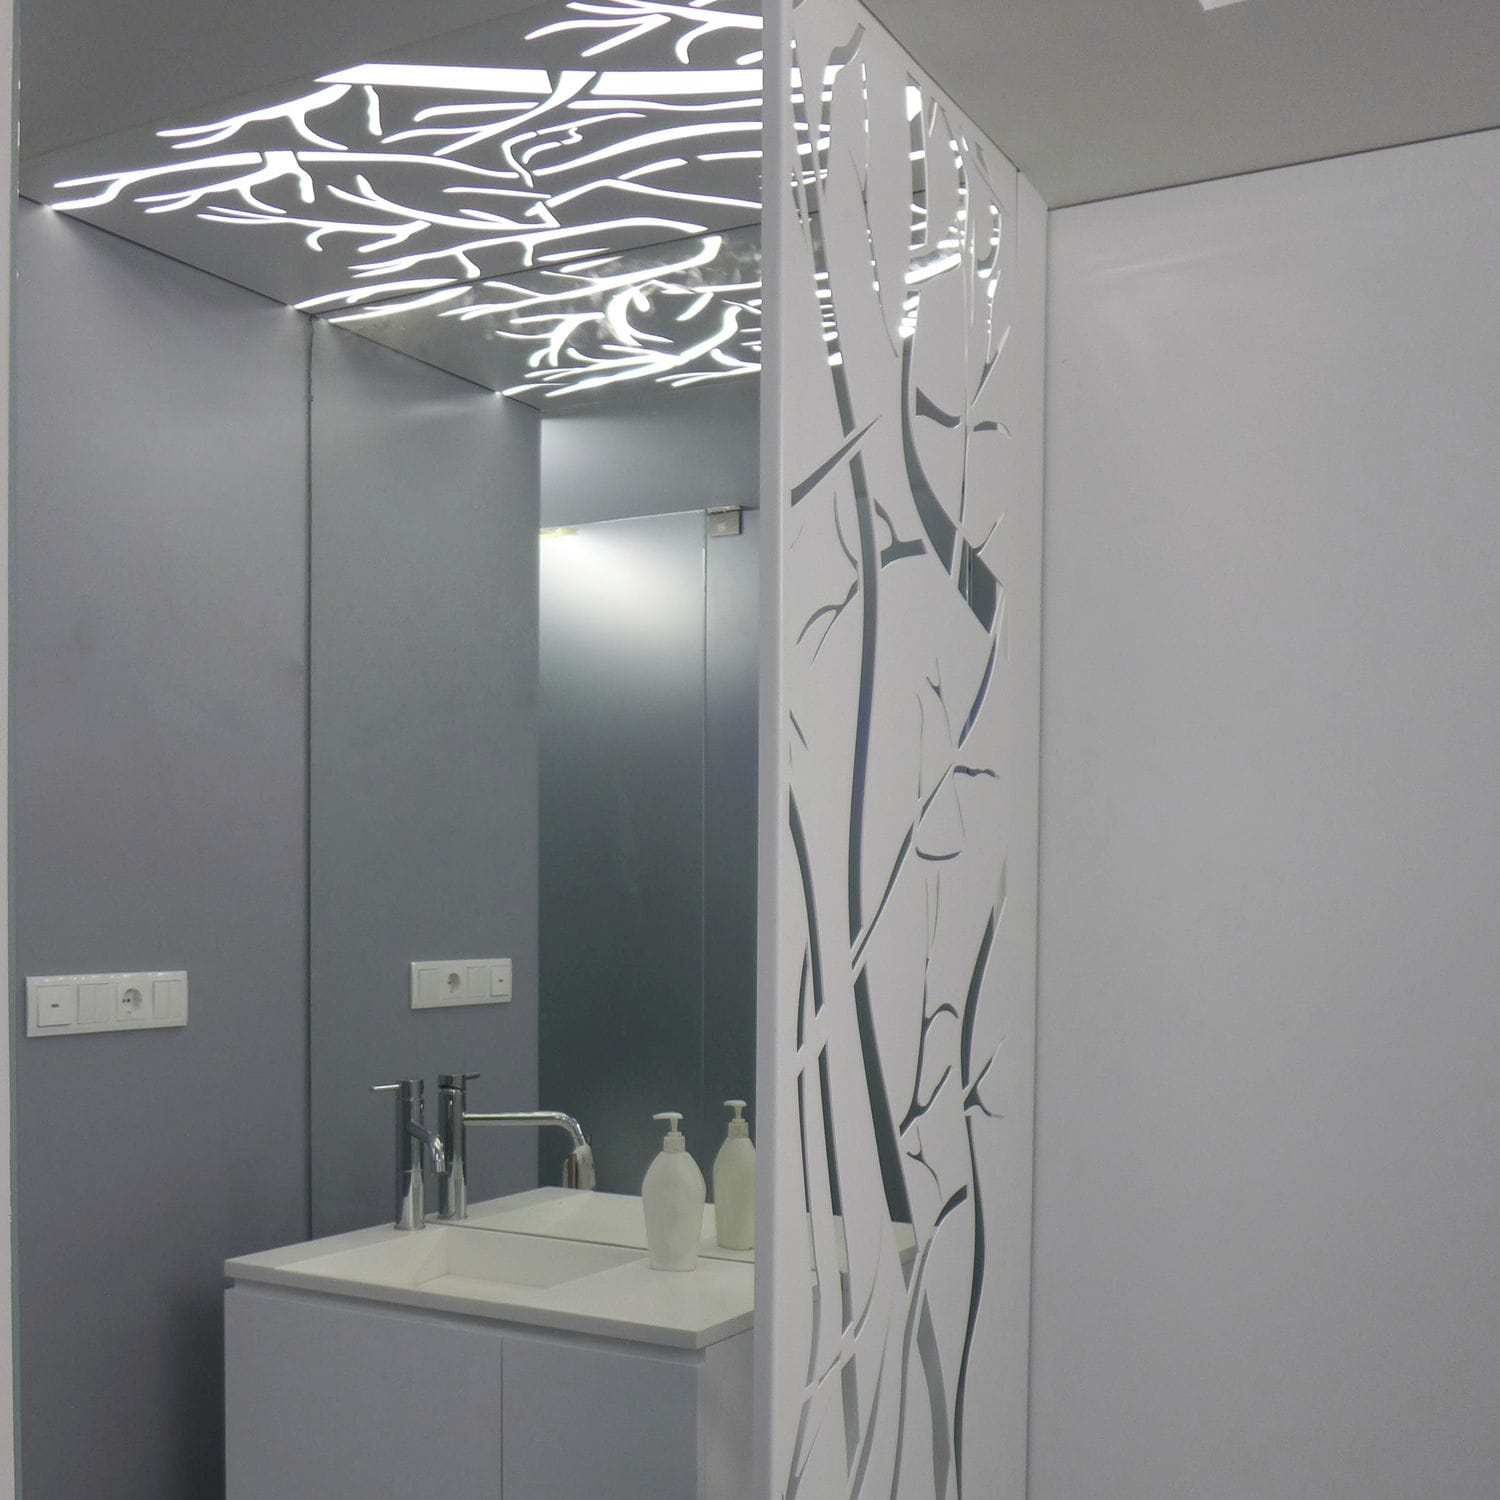 salle de bain claustra aluminium decoration